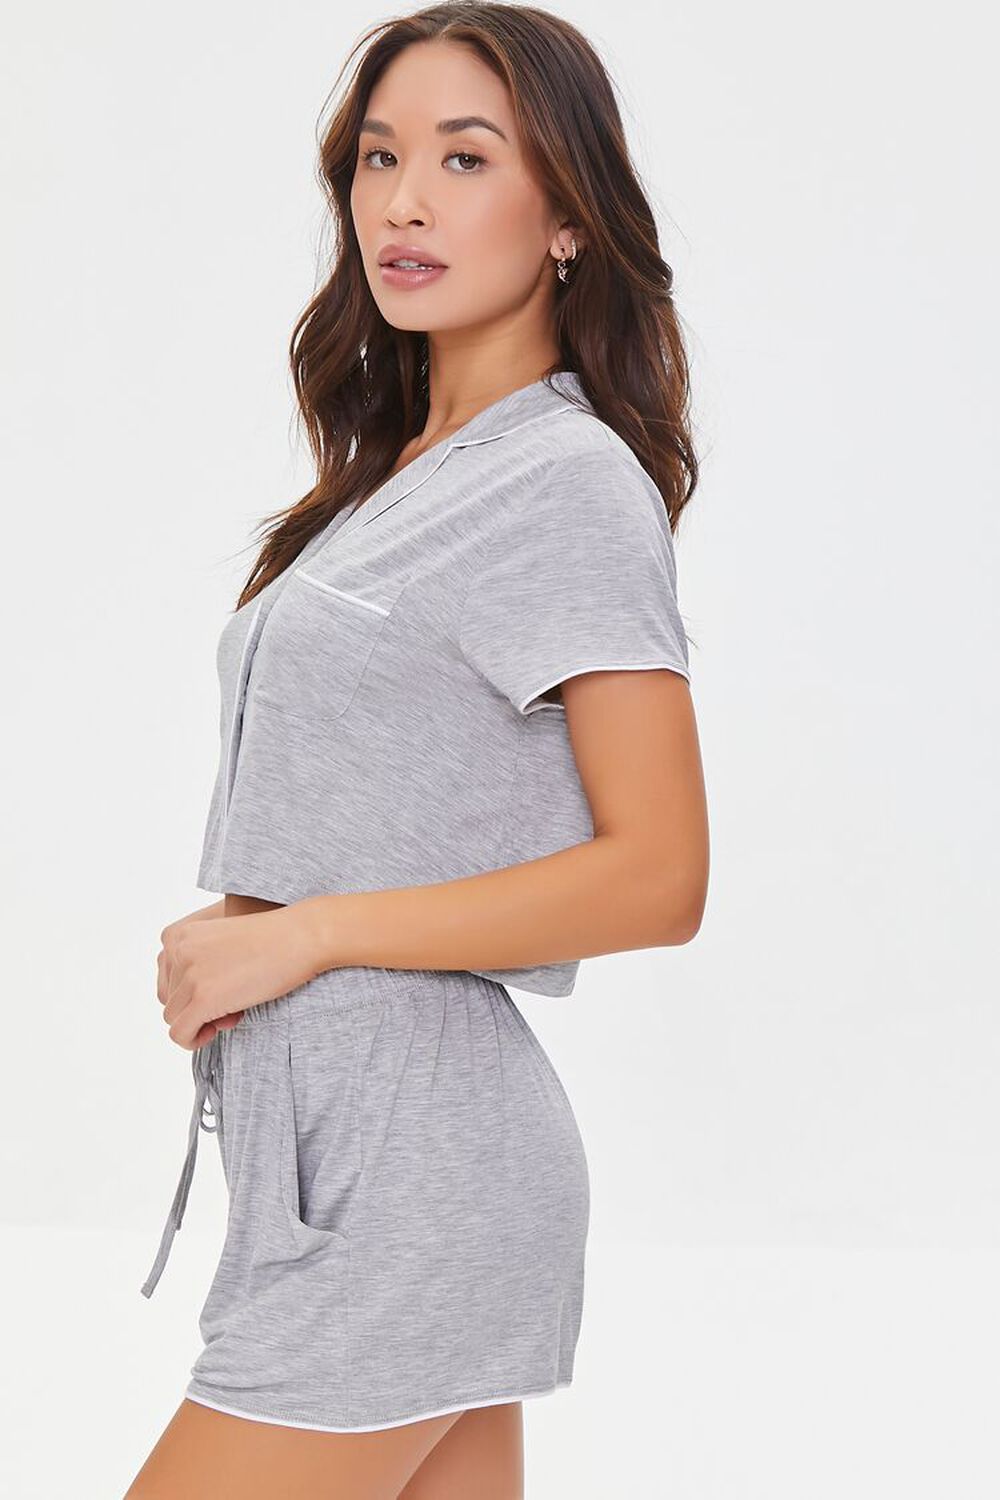 HEATHER GREY Cropped Shirt & Short Pajama Set, image 2